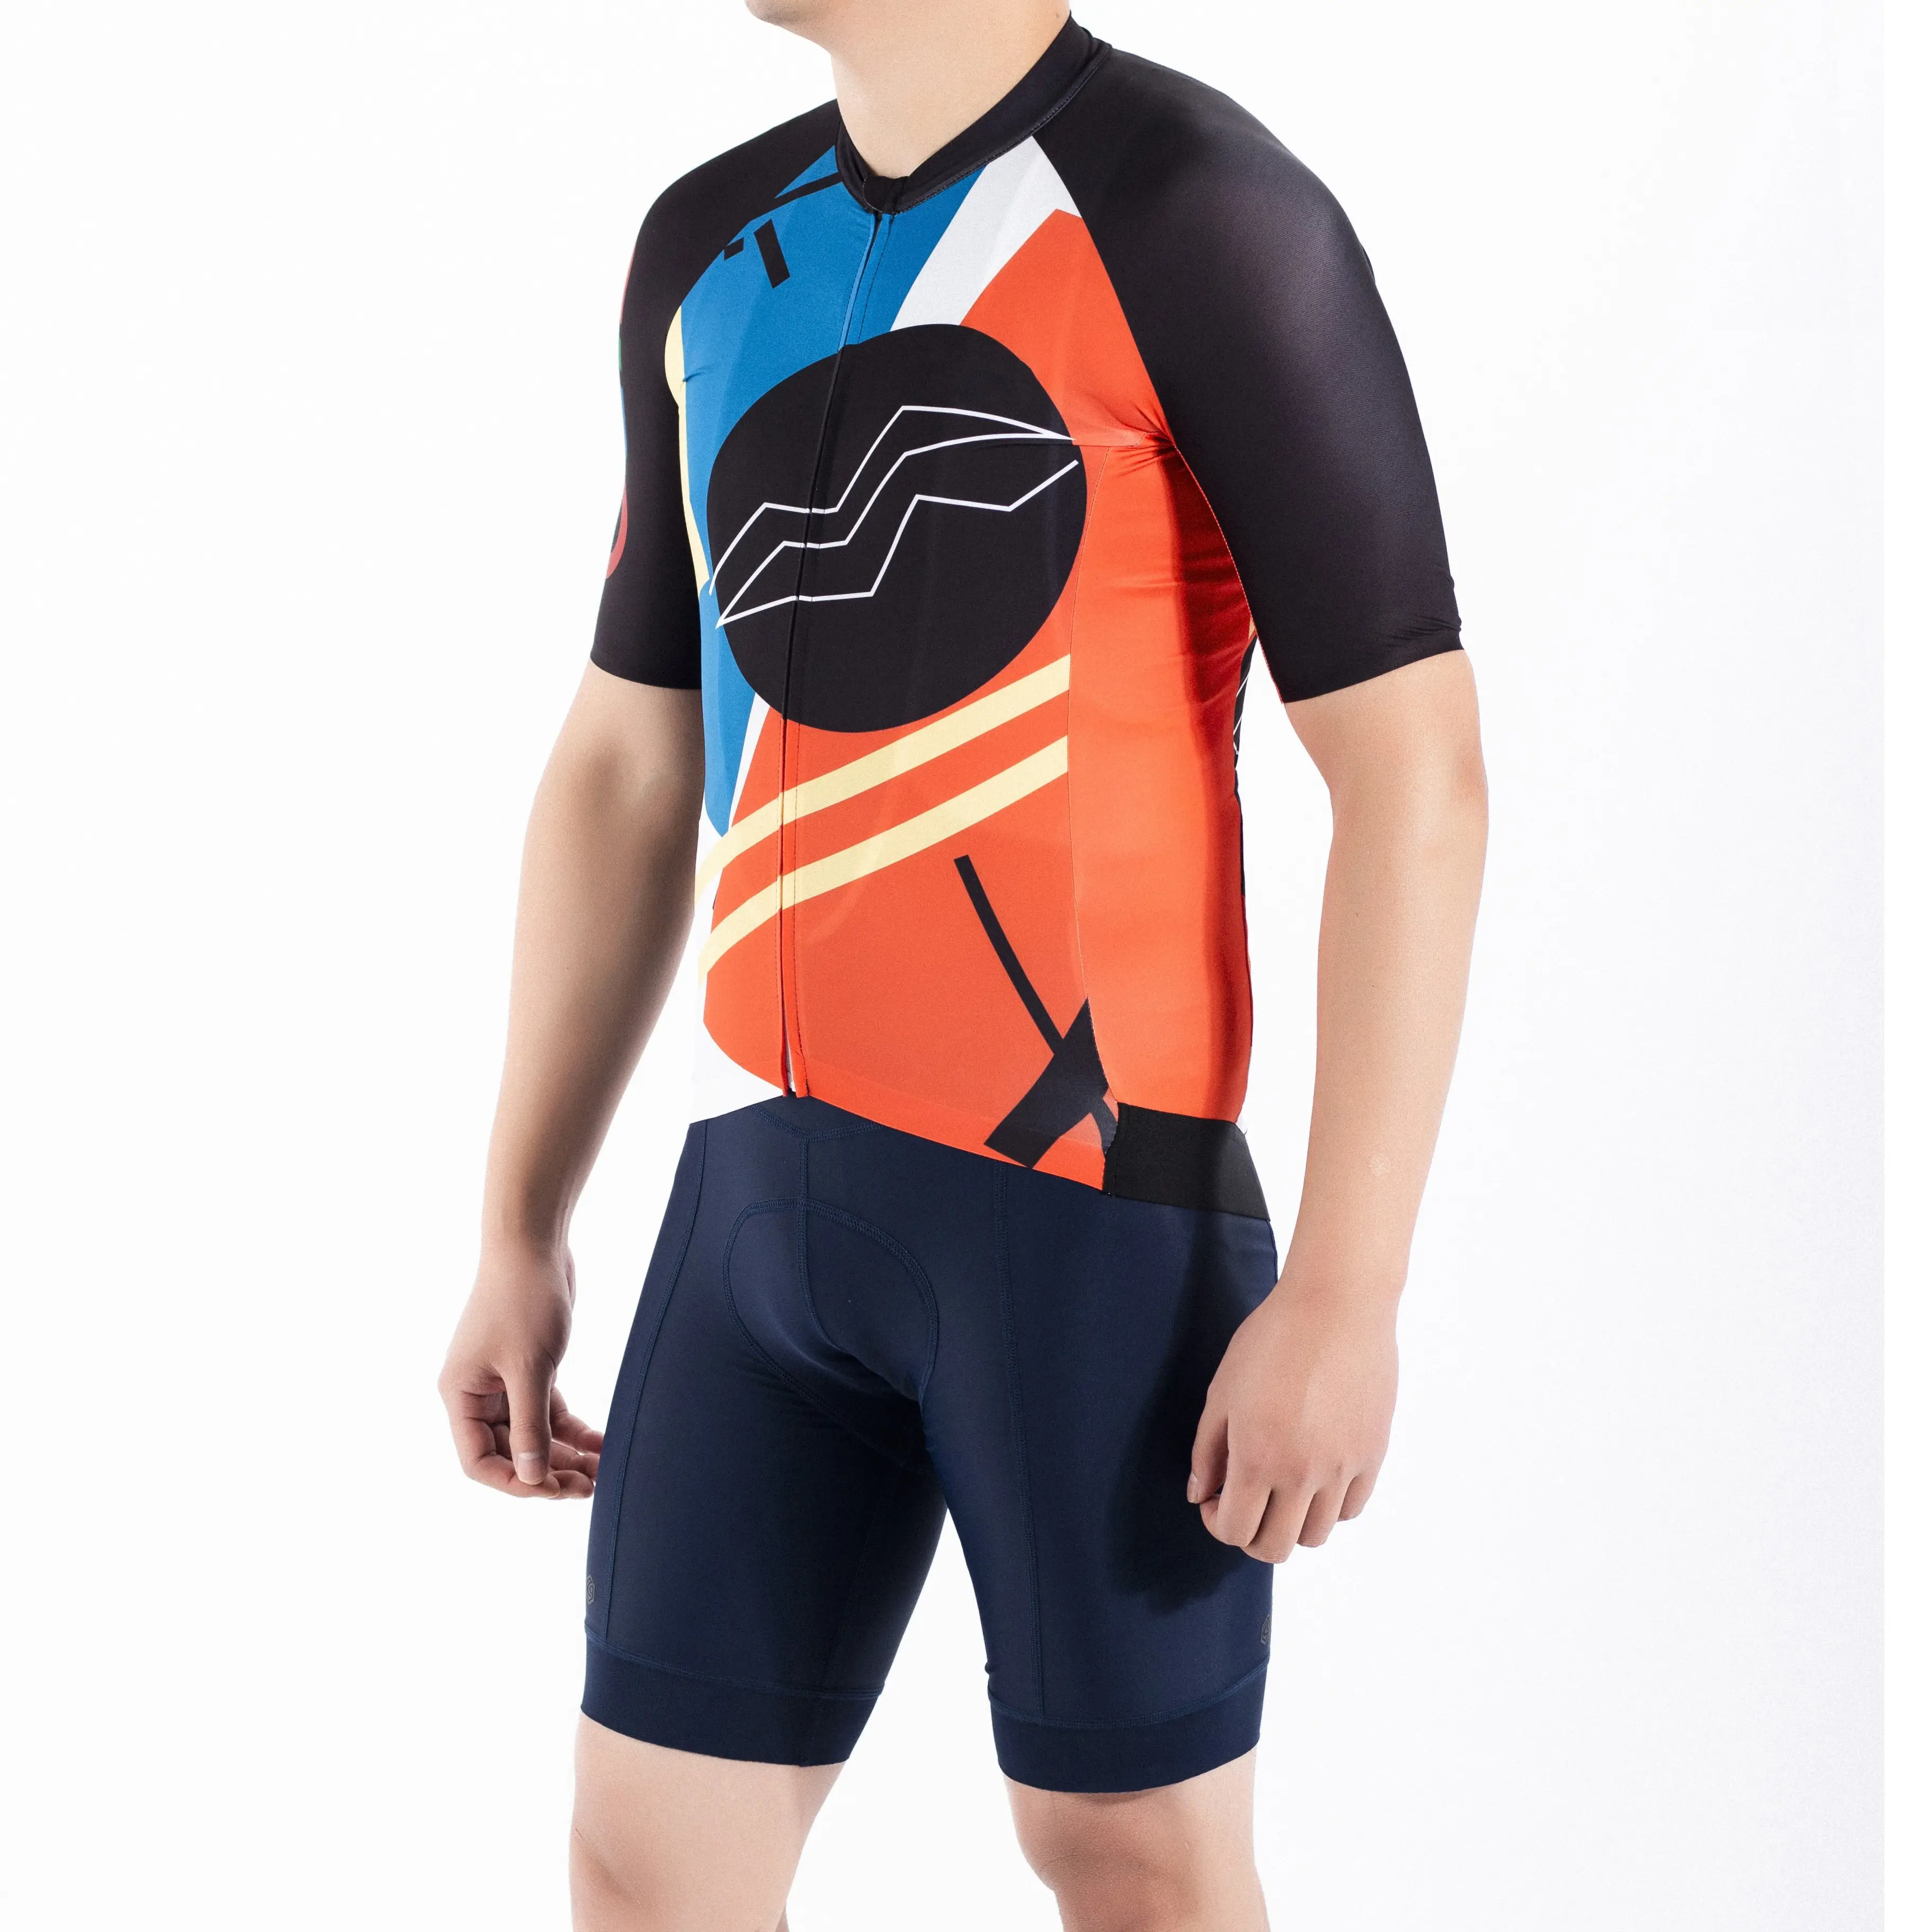 Dblue yeni özel abd bisiklet forması süblimasyon özel Unisex bisiklet spor giyim